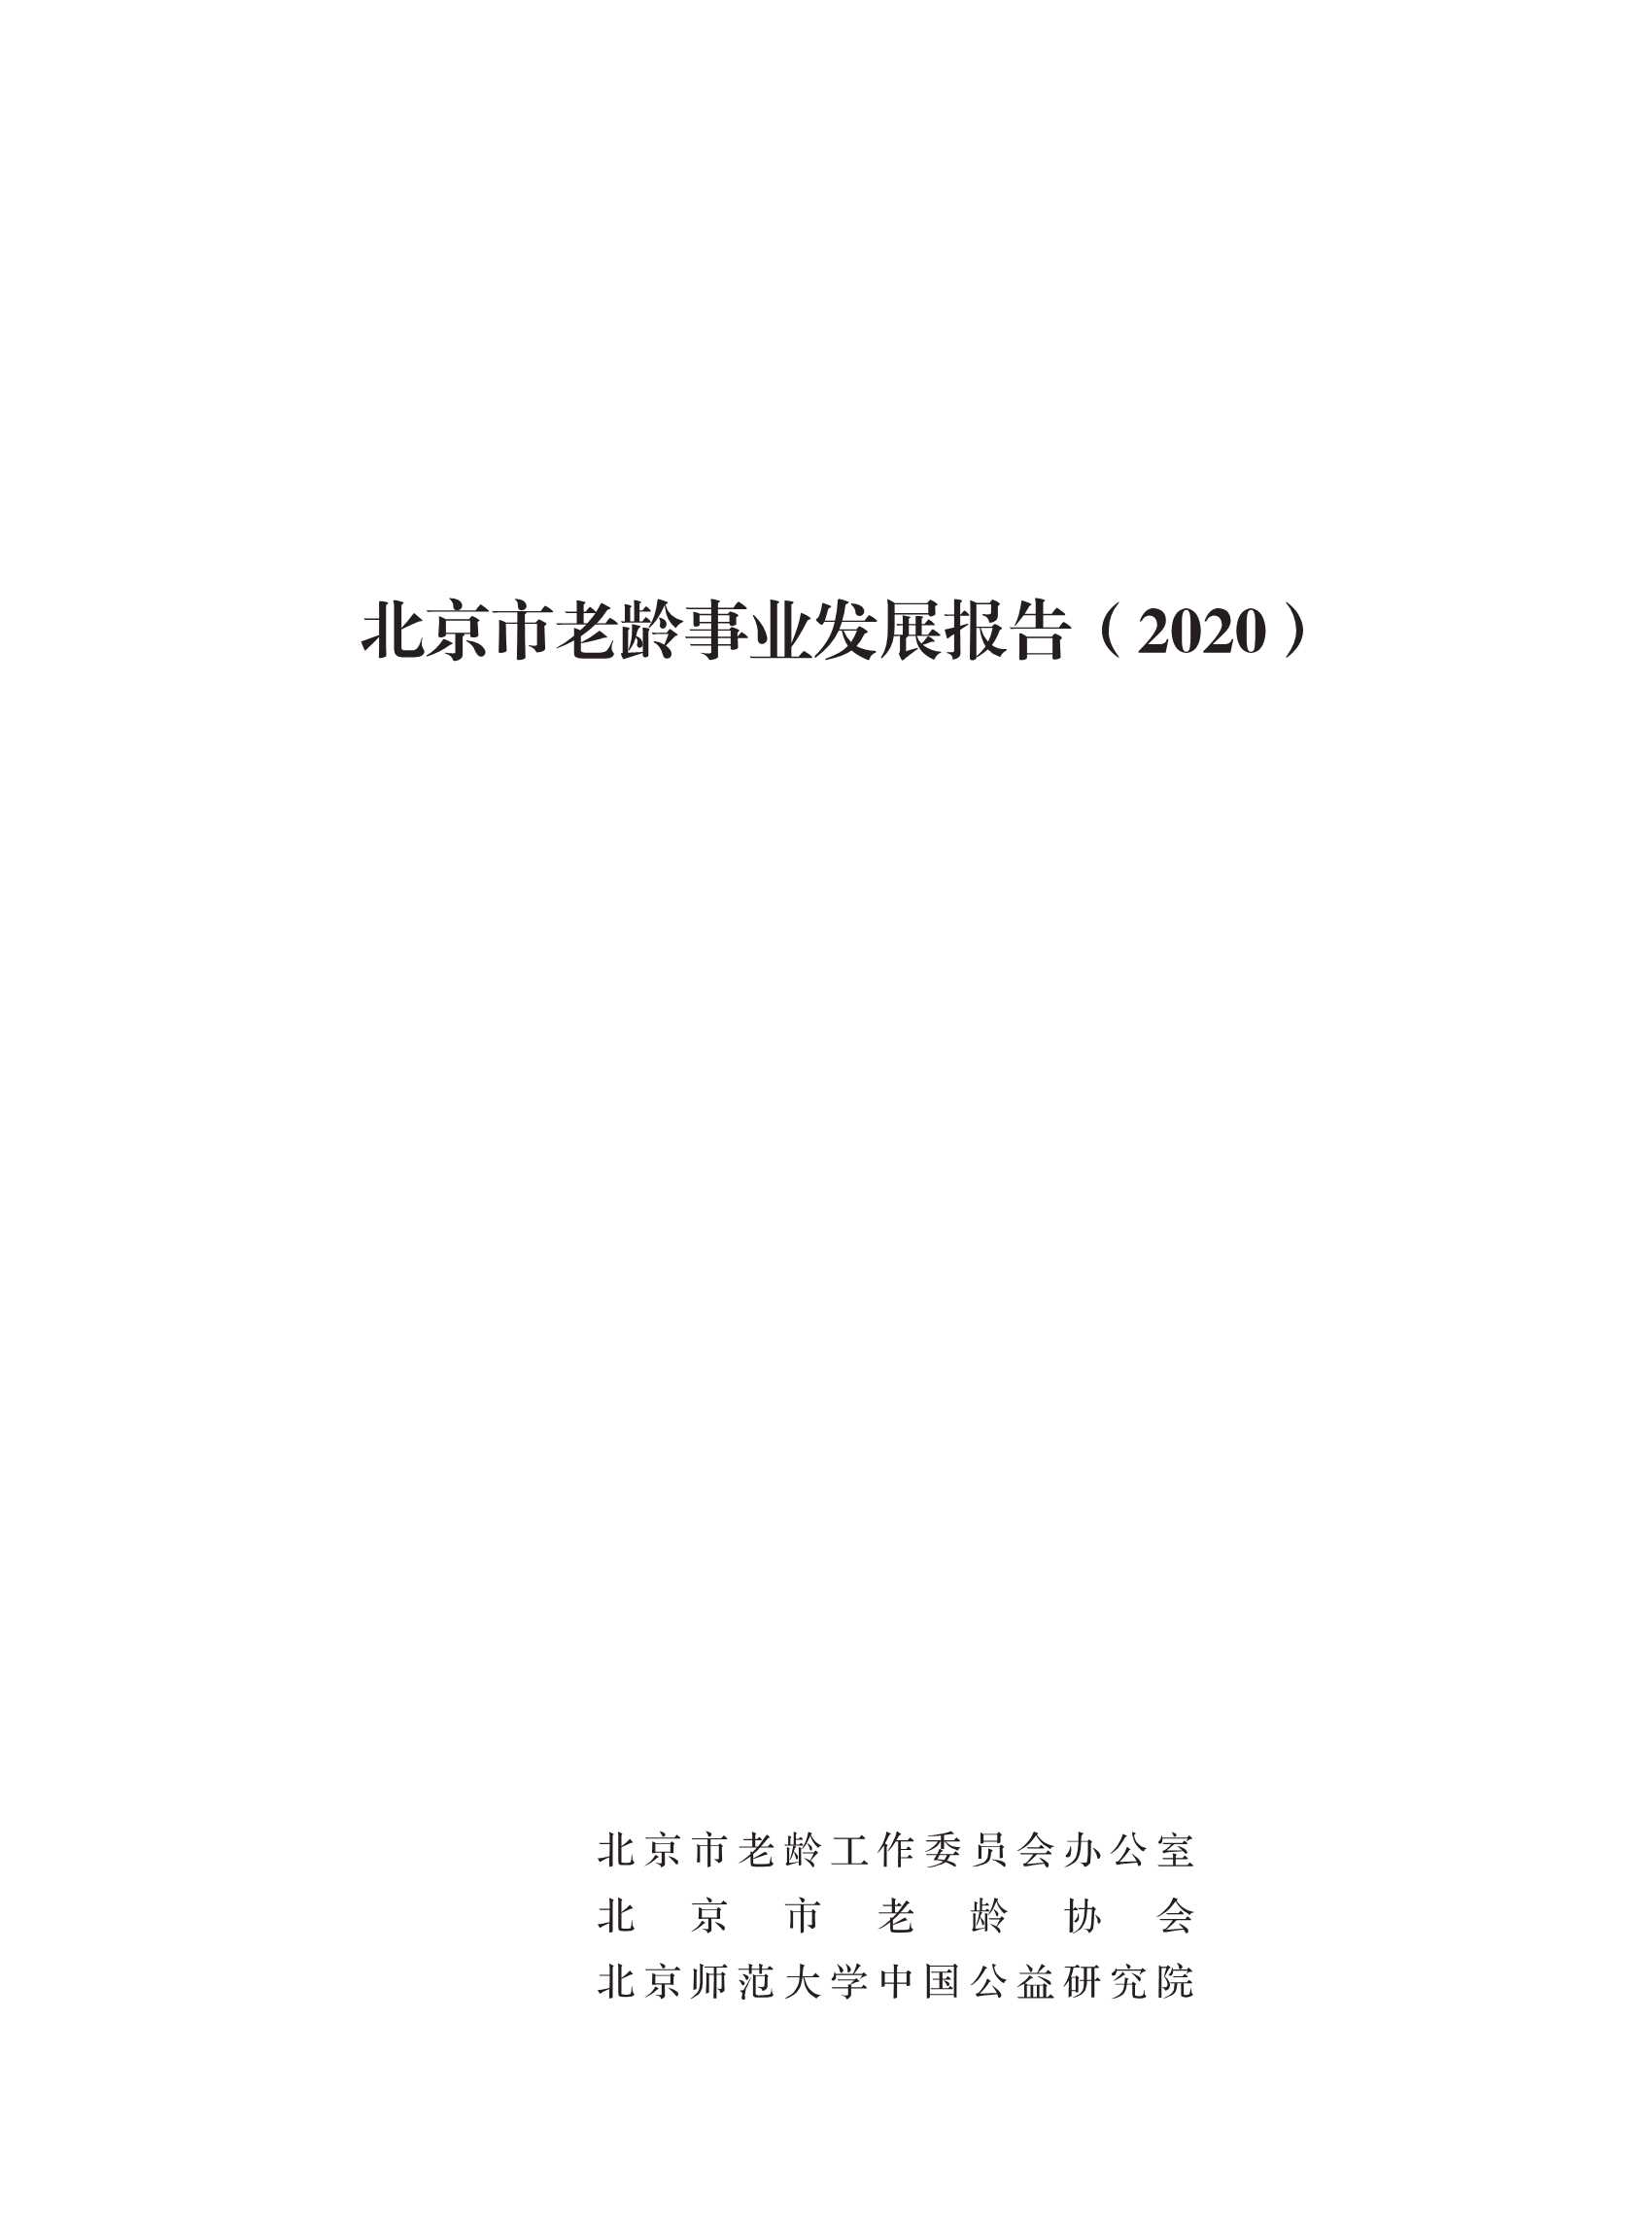 北京师范大学中国公益研究院-北京市老龄事业发展报告（2020）-2021.10-80页